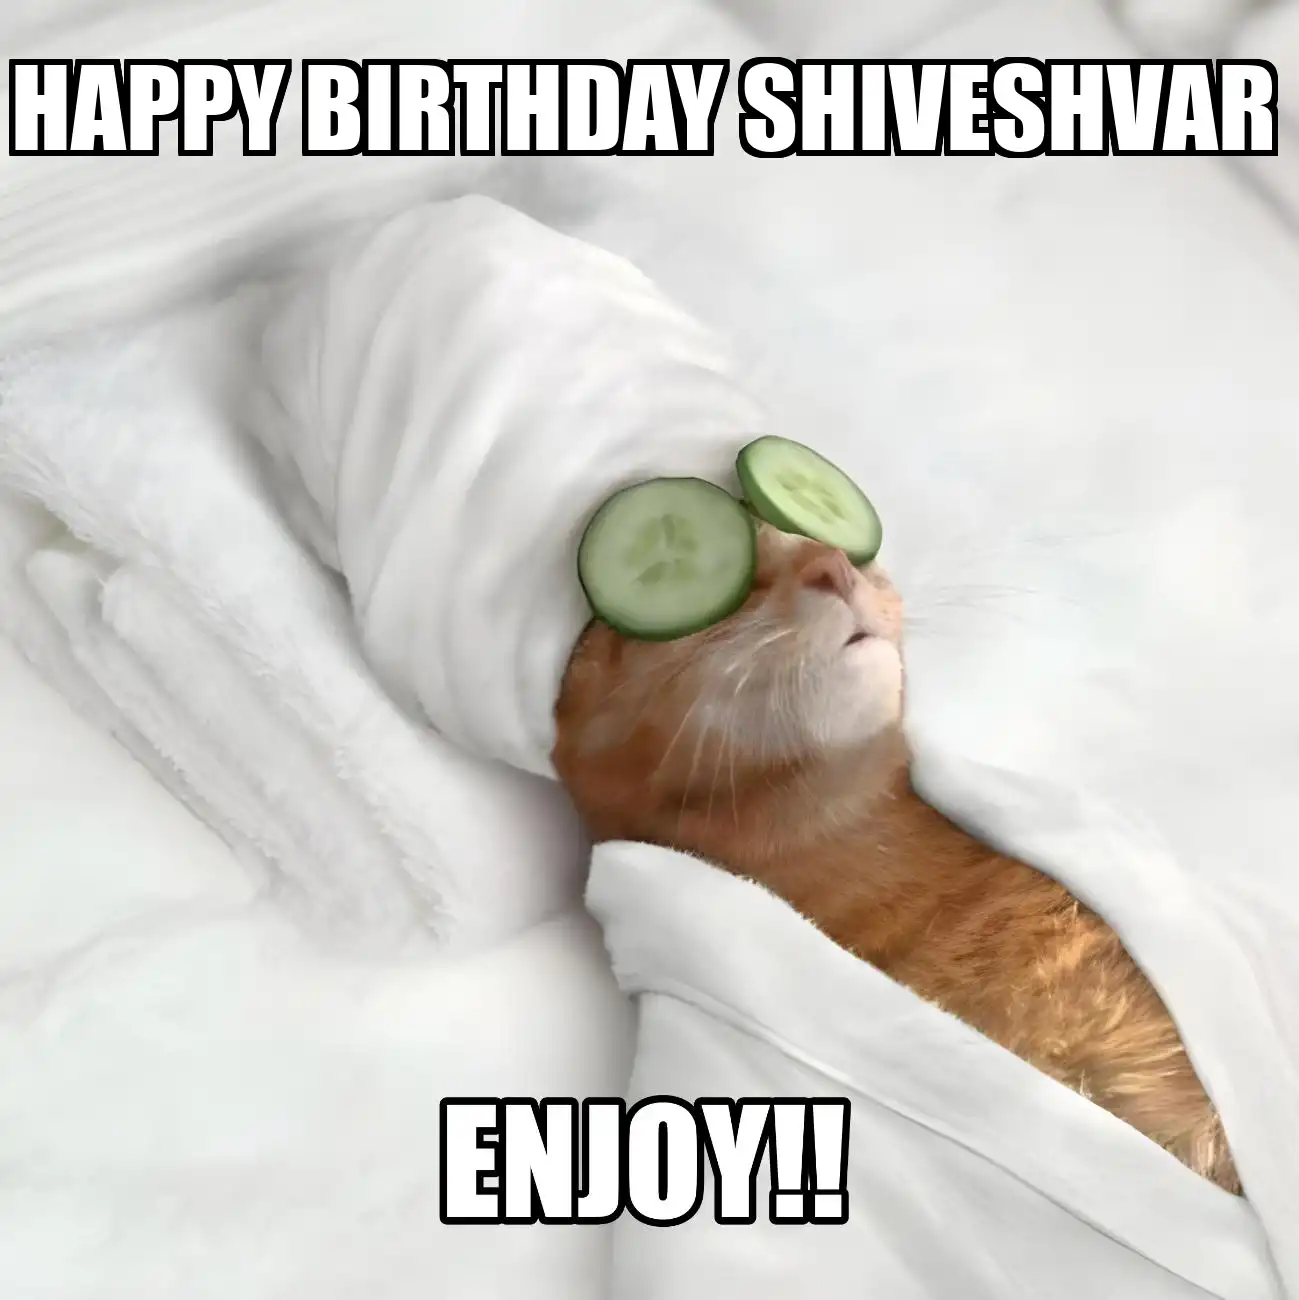 Happy Birthday Shiveshvar Enjoy Cat Meme